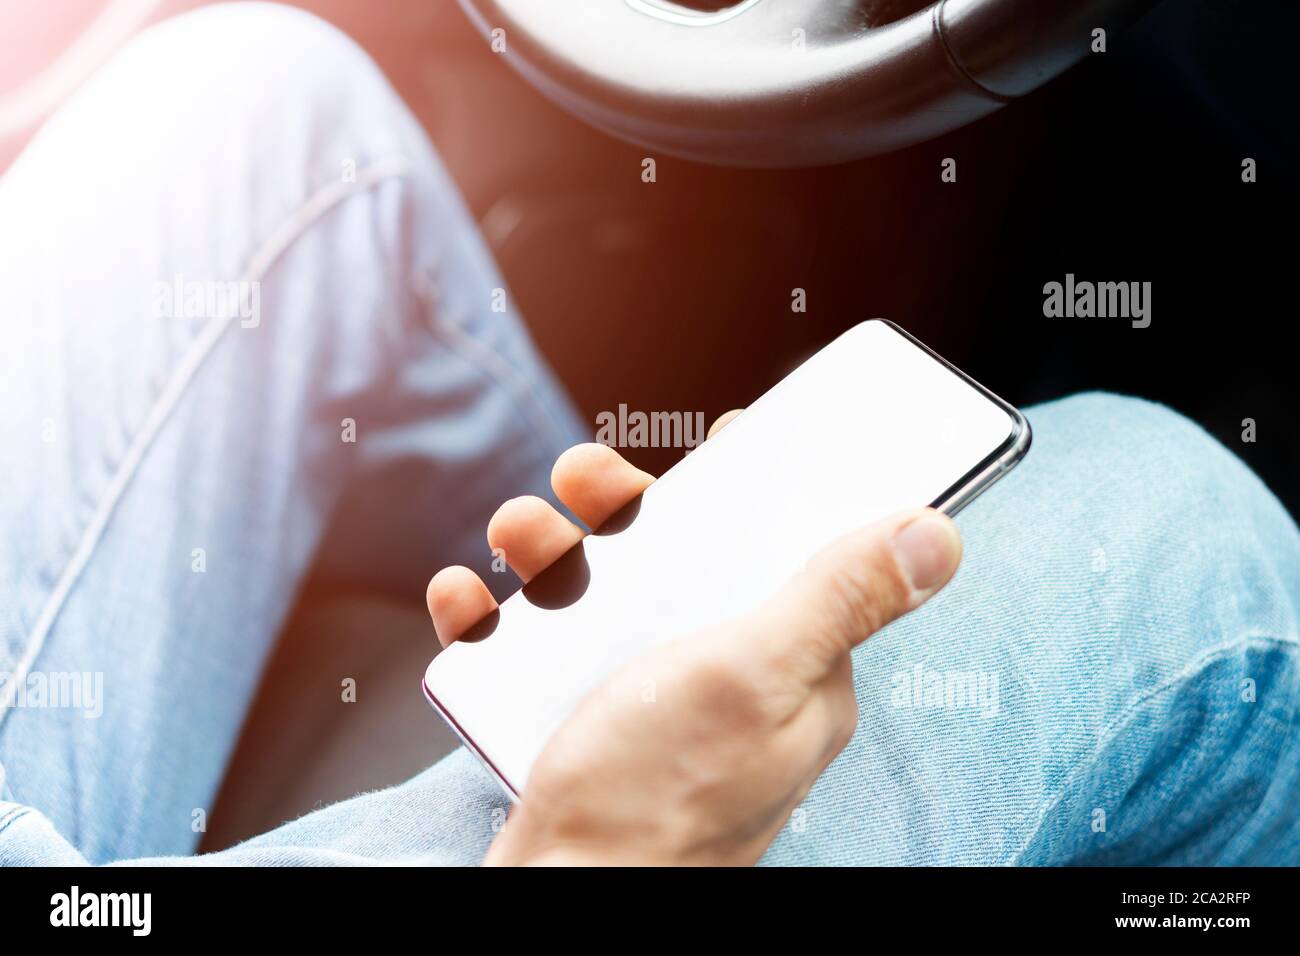 Männliche Hand mit Smartphone im Auto. Mann, der ein Auto fährt. Smartphone im Auto für Navigieren oder GPS. Mobiltelefon in der Hand des Fahrers. Stockfoto